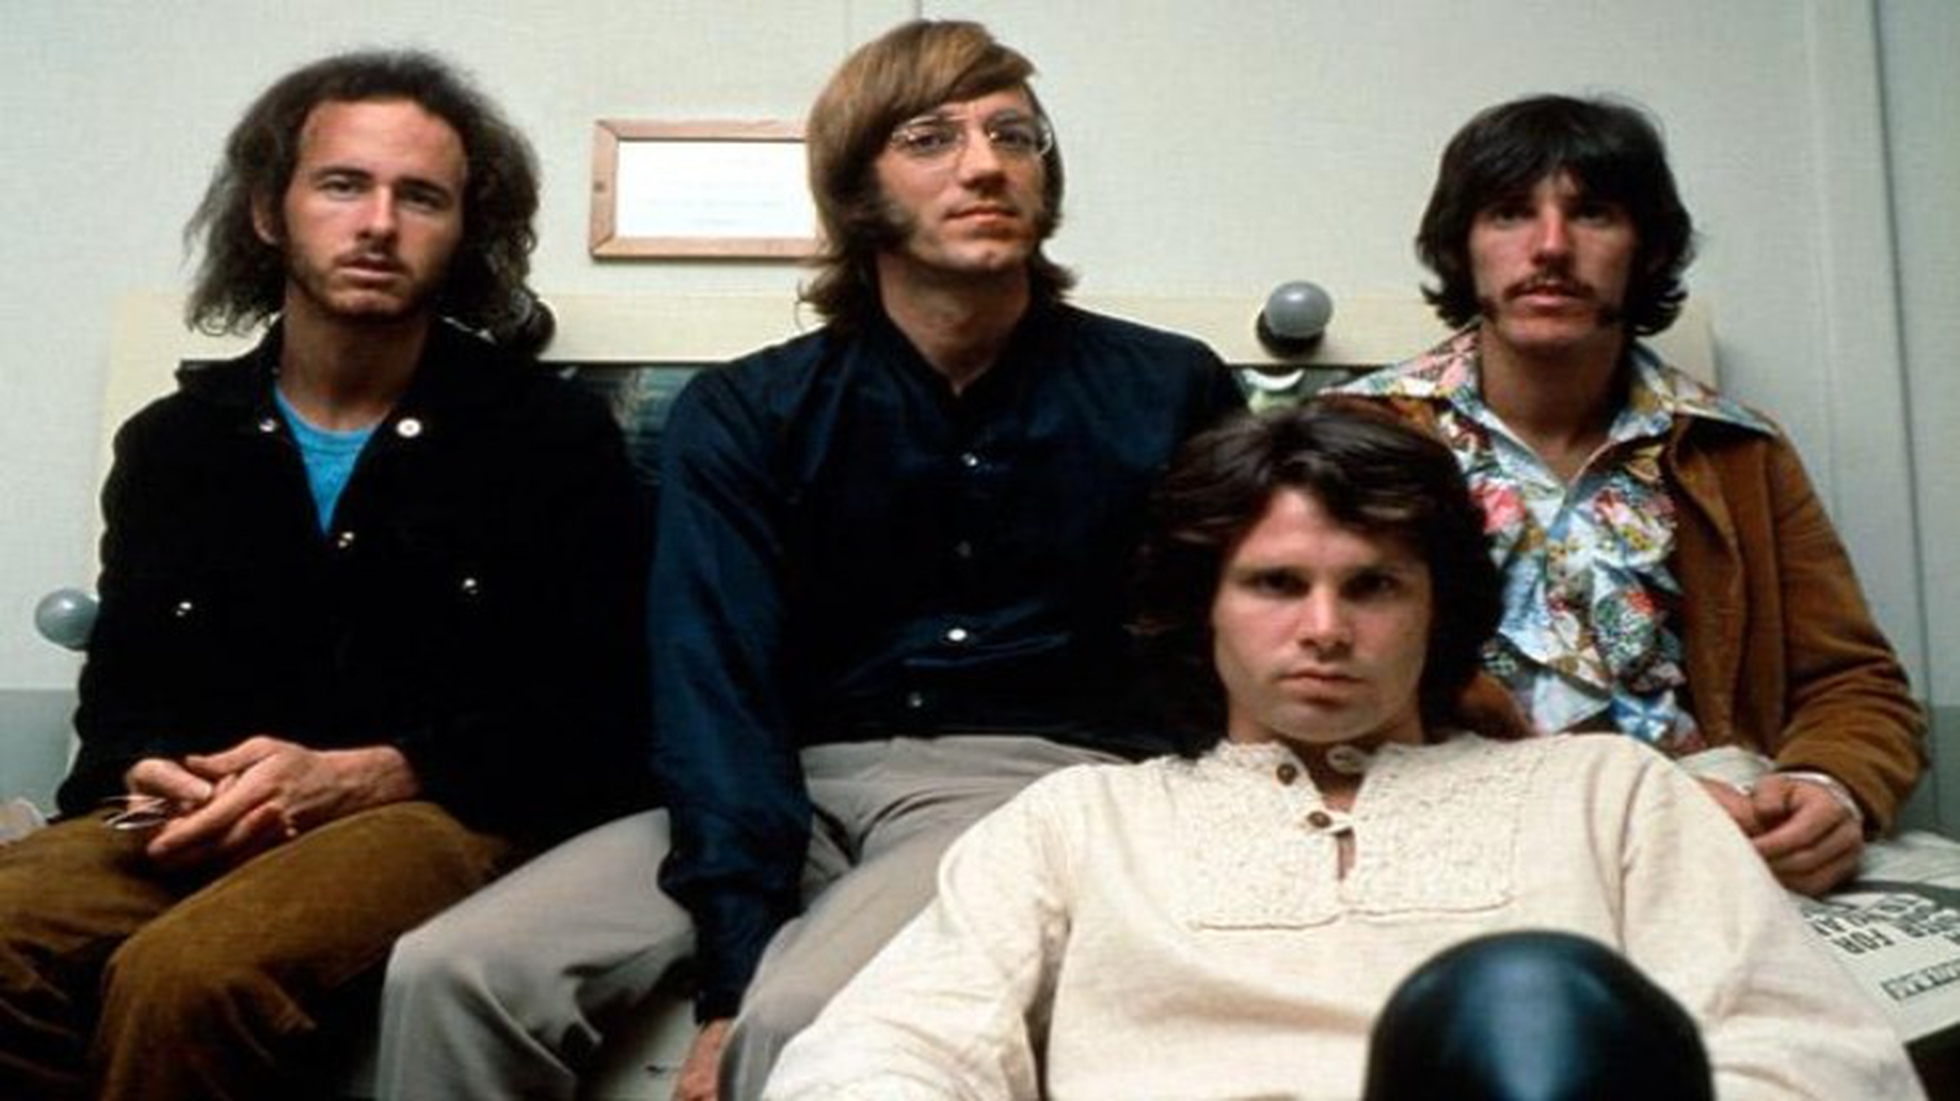 Jim Morrison. Vita, parole, morte. I più importanti concerti Doors. Un  ricordo di Ray Manzarek e del produttore Paul Roschild (Manuali rock) :  : Libros